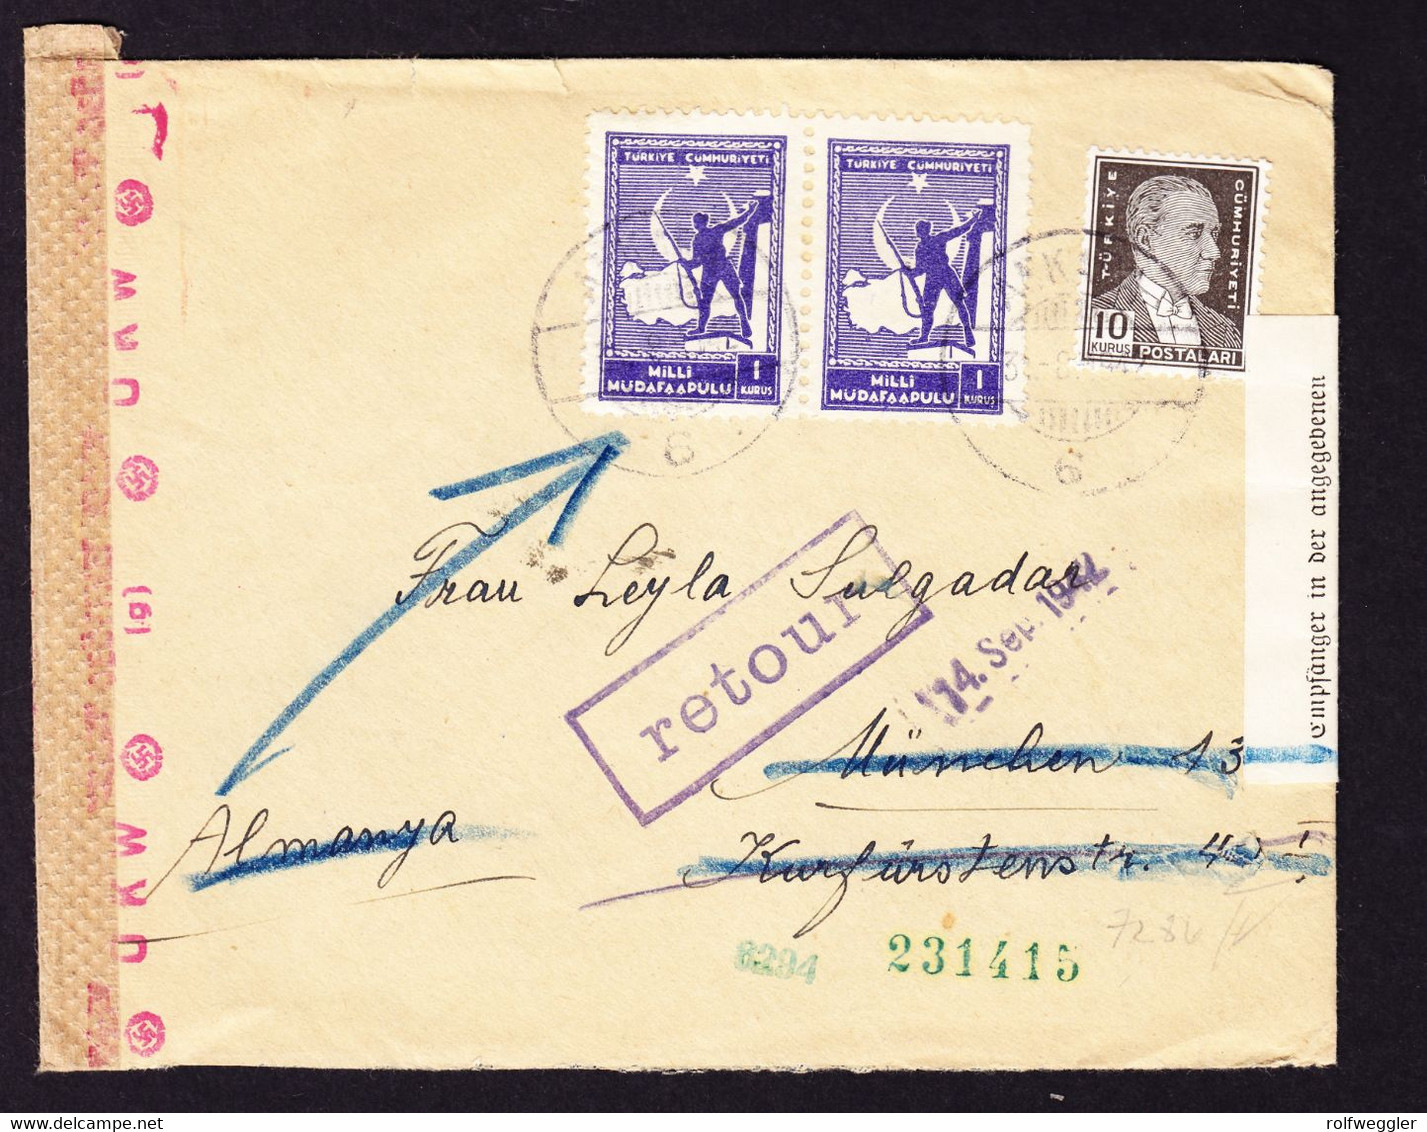 1942 Zensurierter Brief Aus Ankara Nach München. Leitzettel: Strasse In München Unbekannt, Retour. - Briefe U. Dokumente